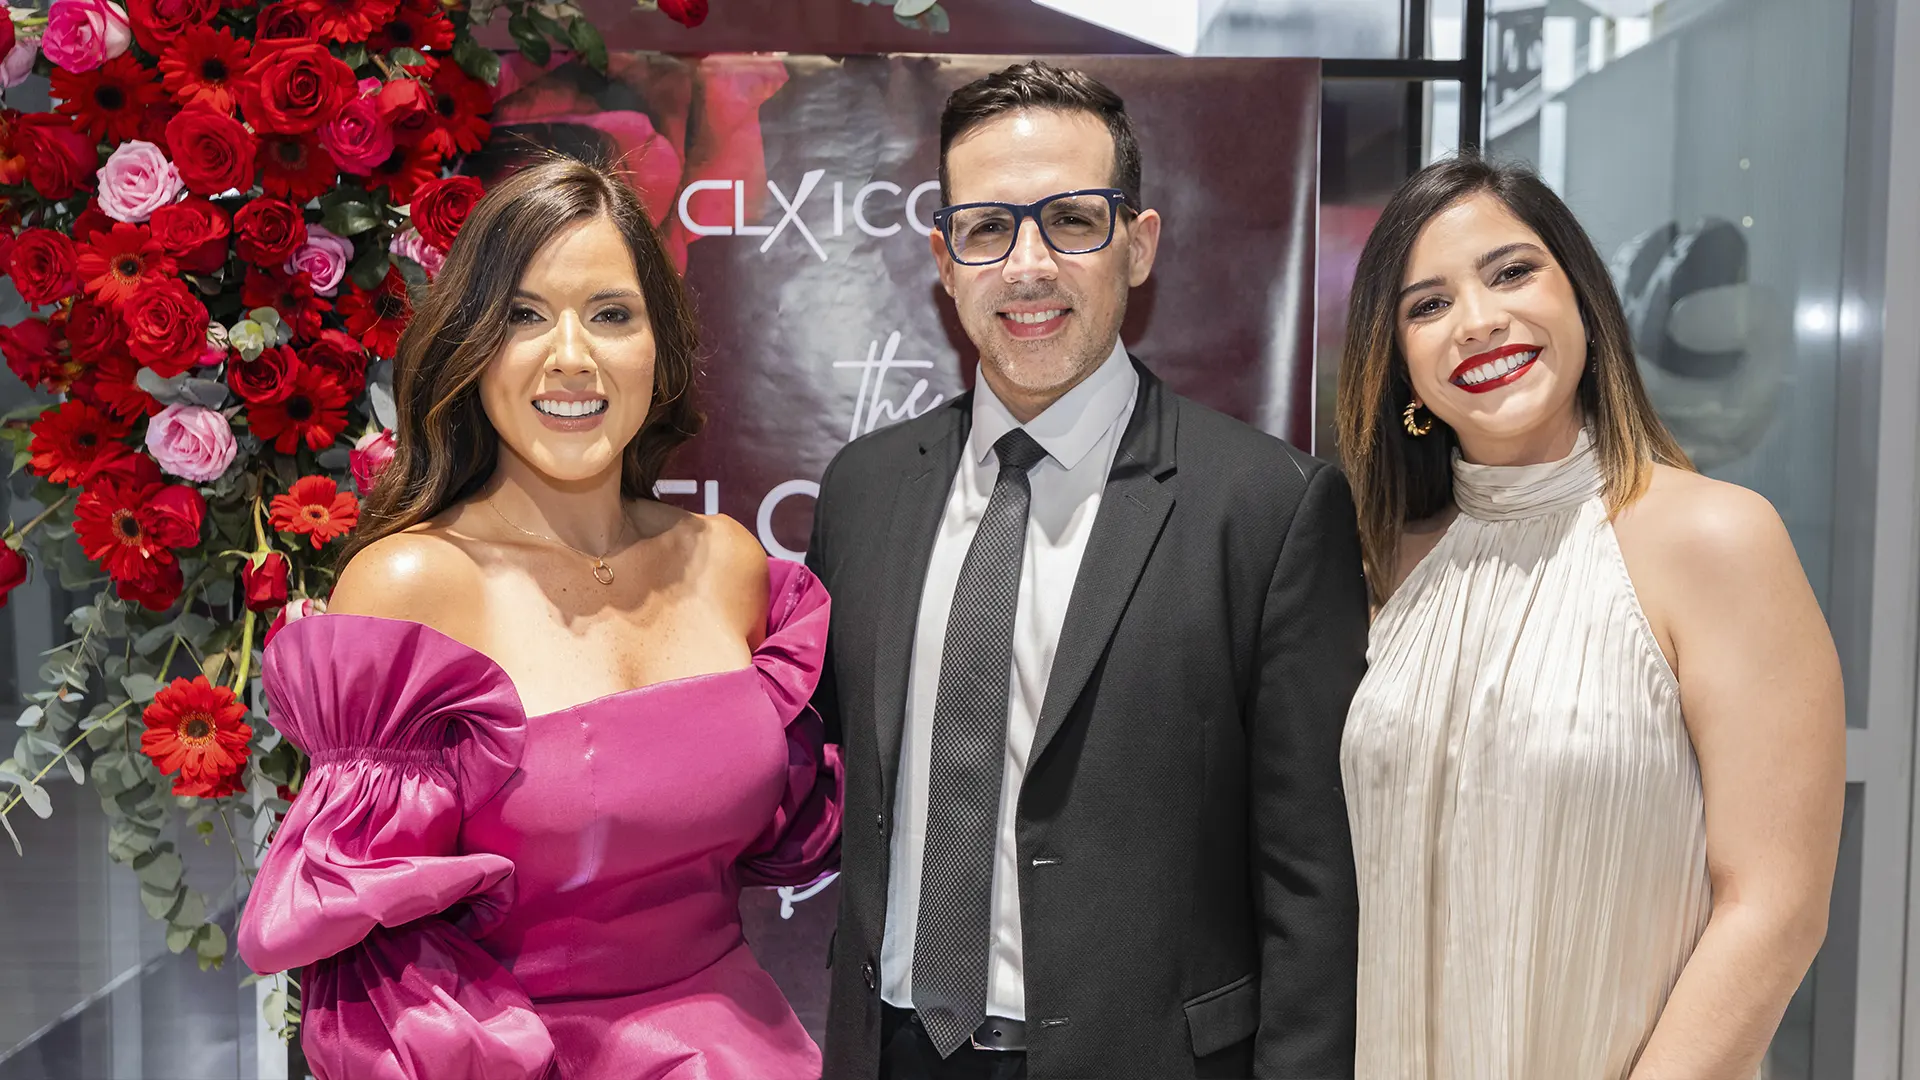 CLX Icons edición Miss Venezuela - CLX Icons